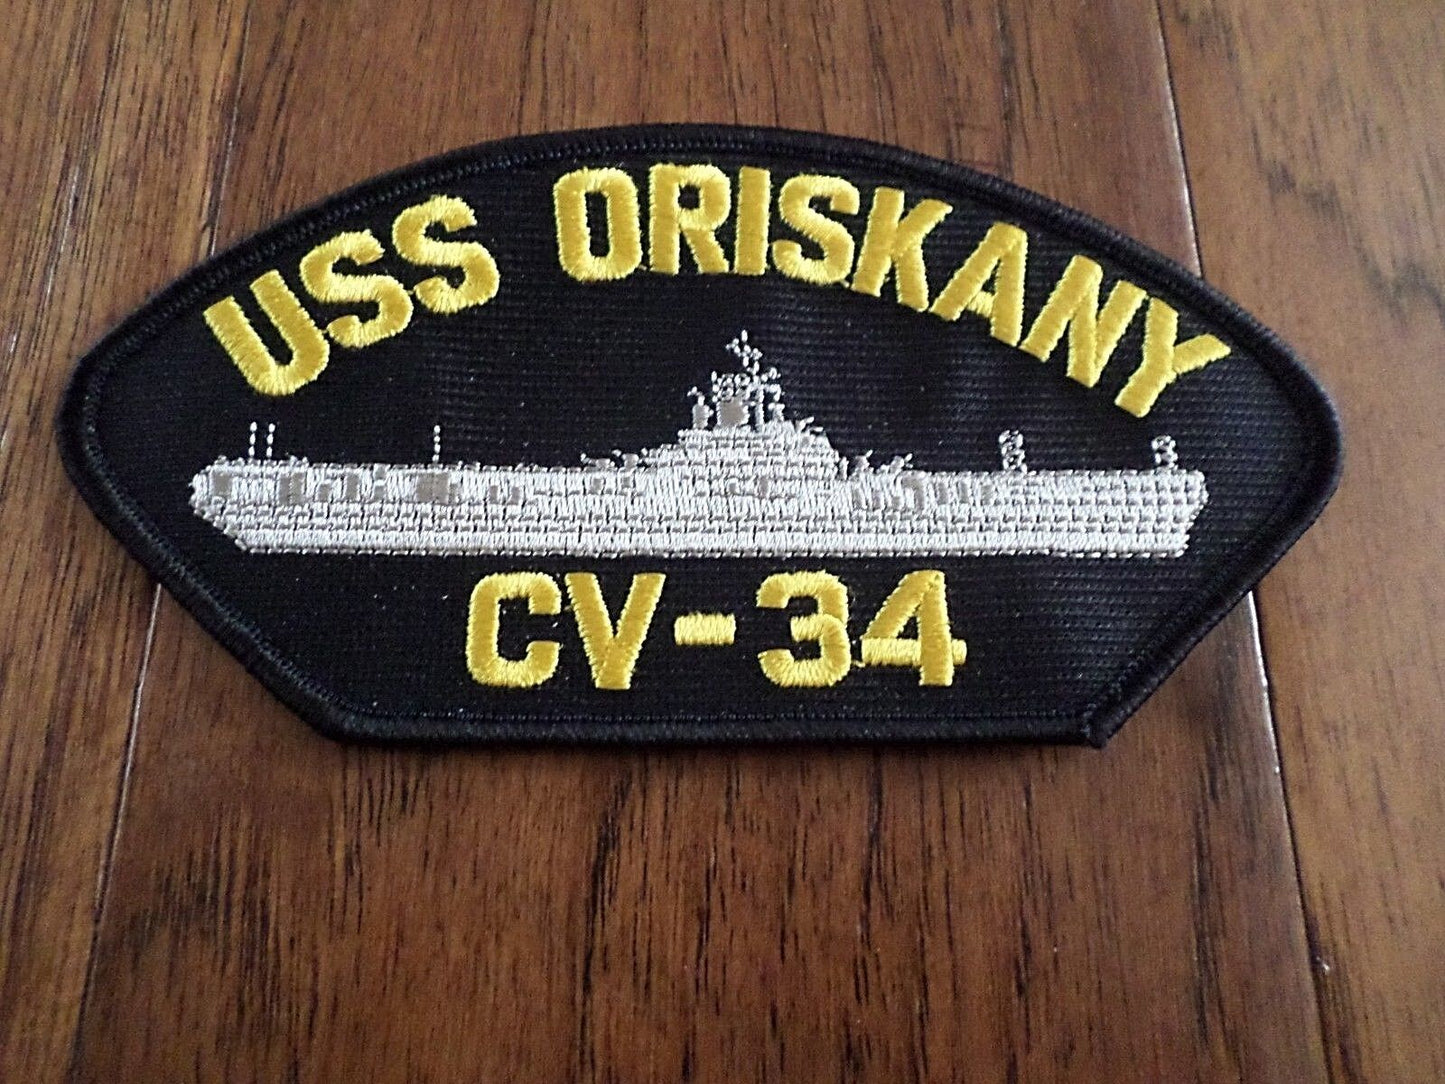 USS ORISKANY CV-34 U.S NAVY CARRIER SHIP HAT PATCH U.S.A MADE HEAT TRANSFER